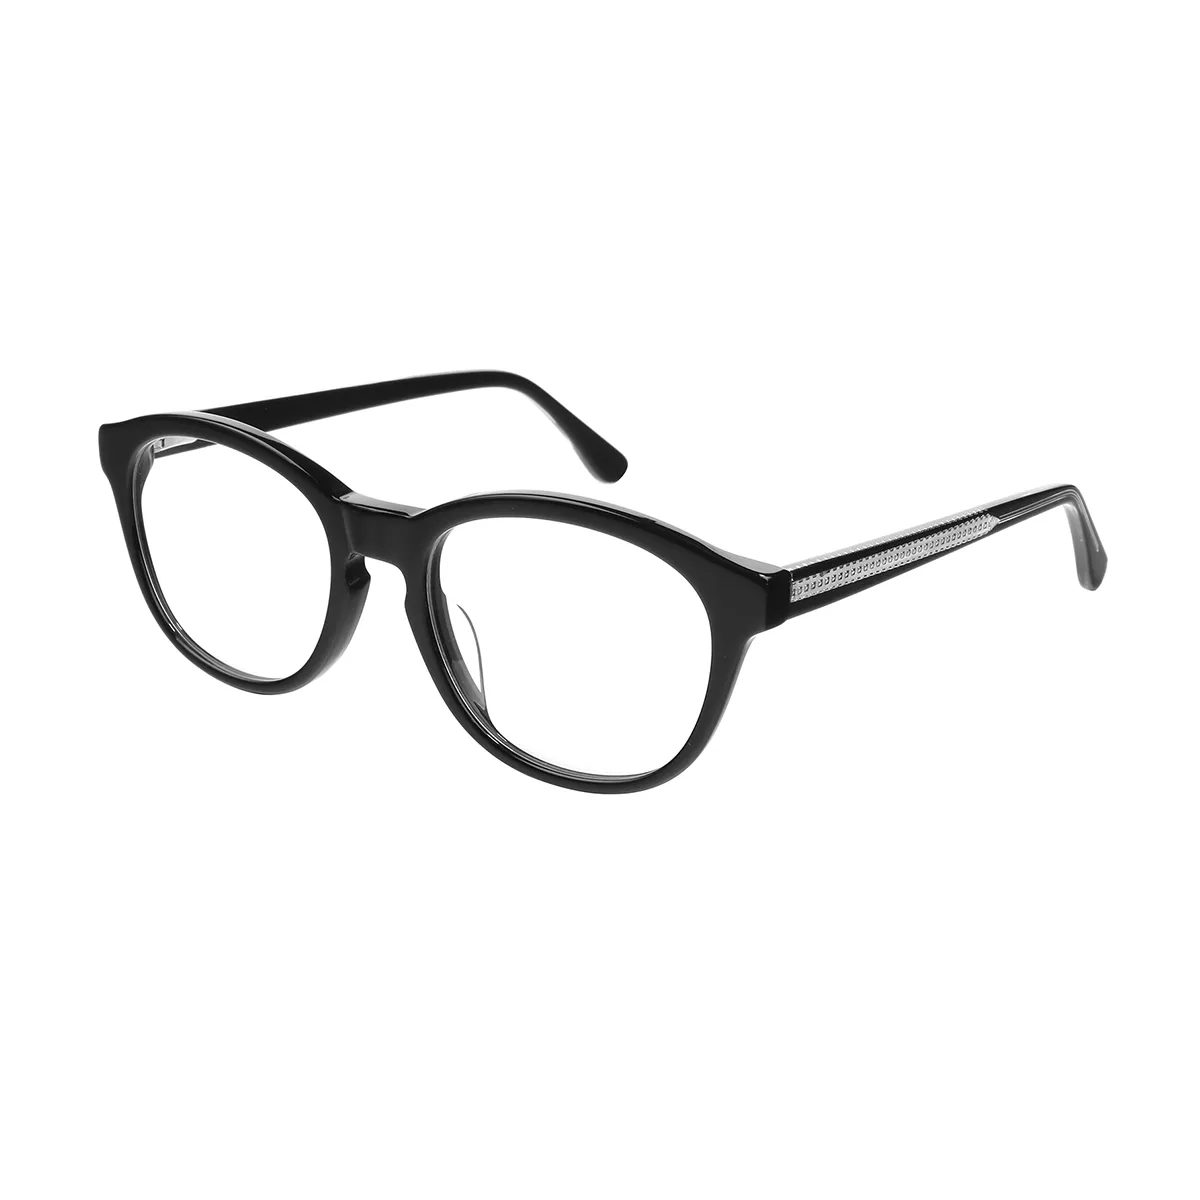 Classic Oval Black Glasses for Men & Women